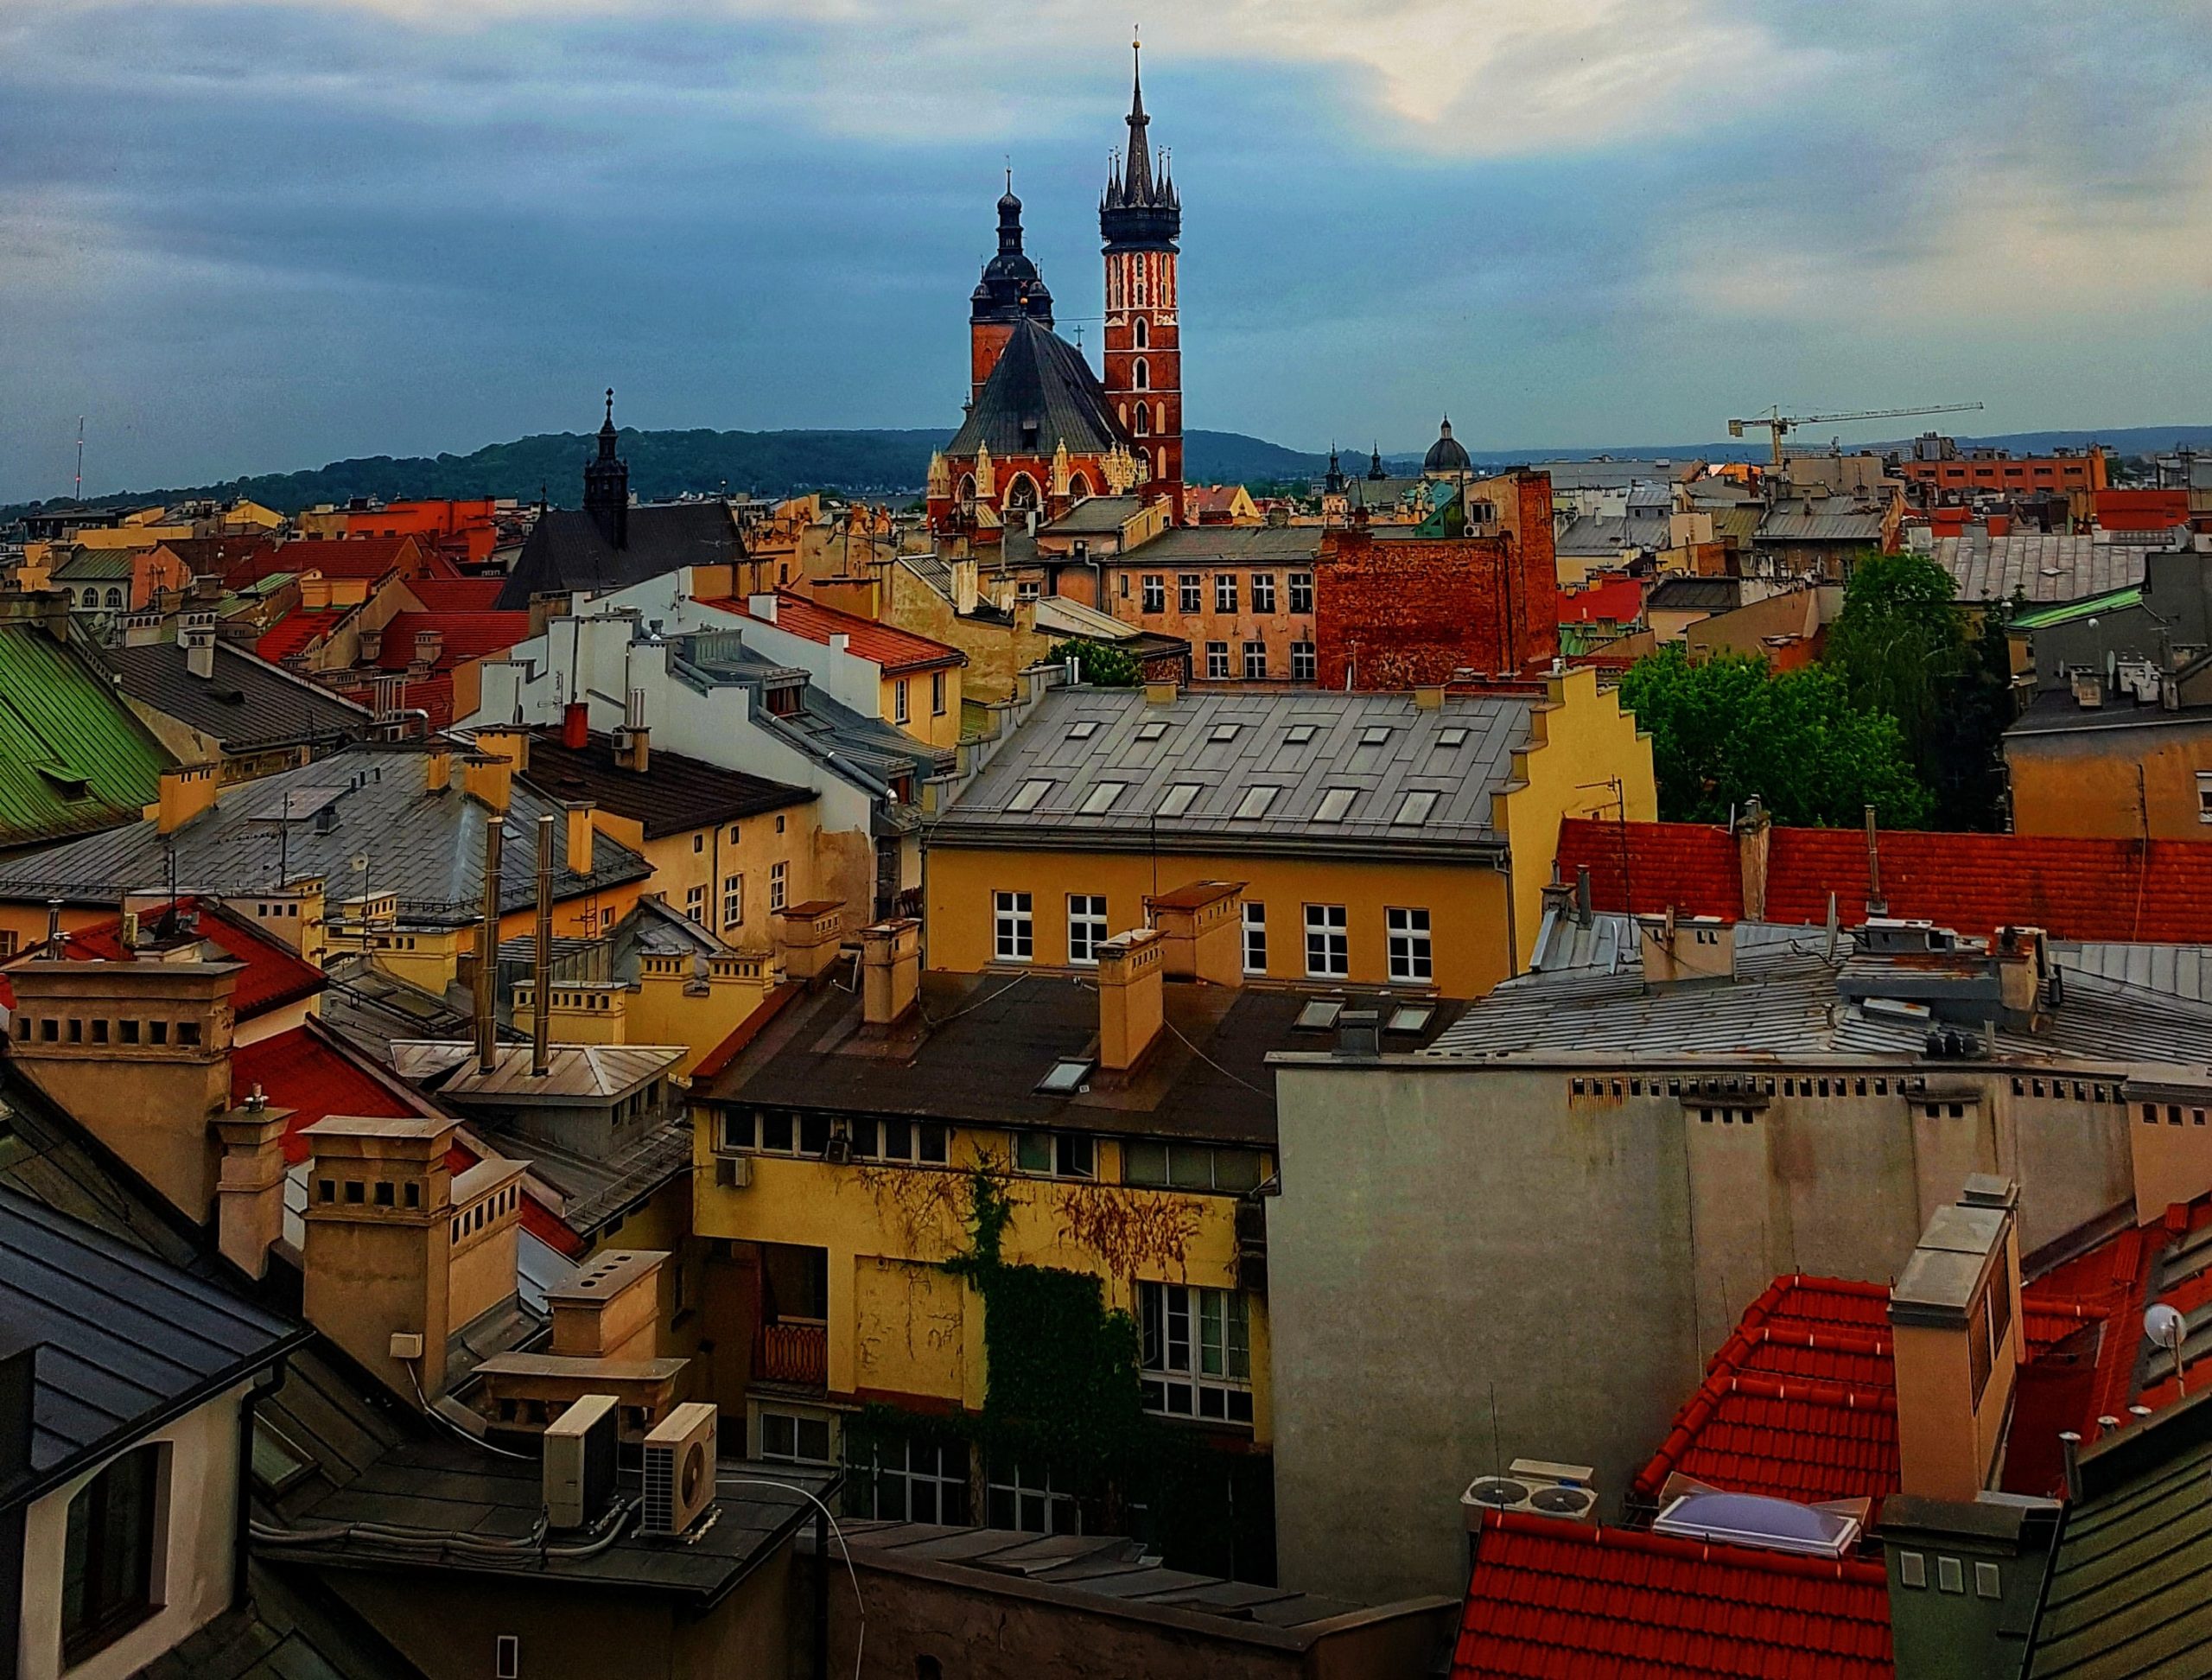 Krakow, Poland.